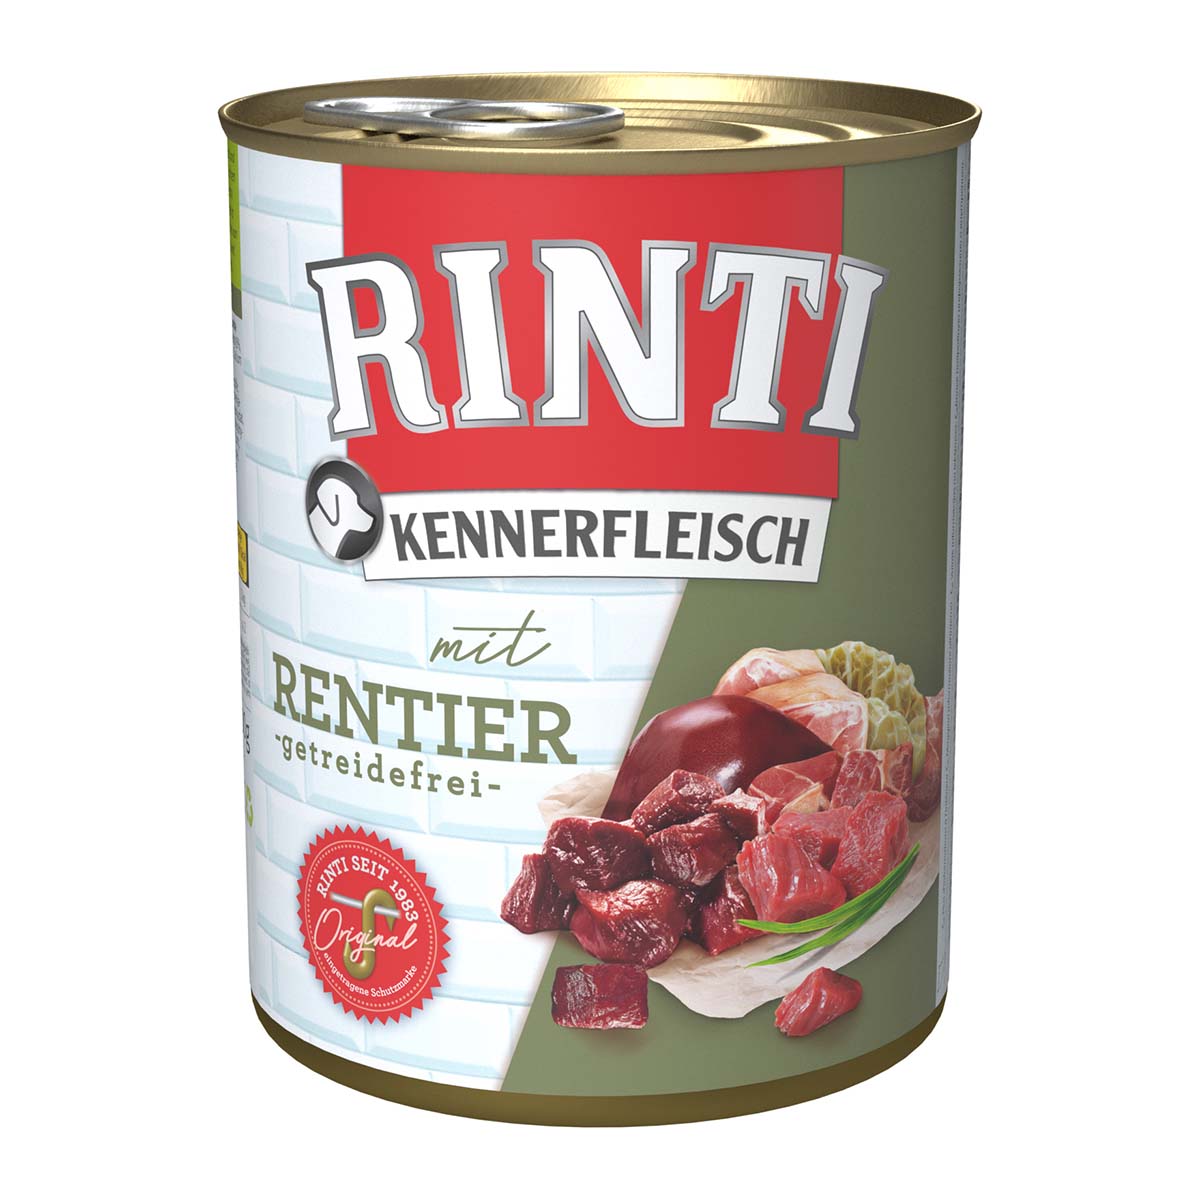 Rinti Kennerfleisch mit Rentier 12x800g